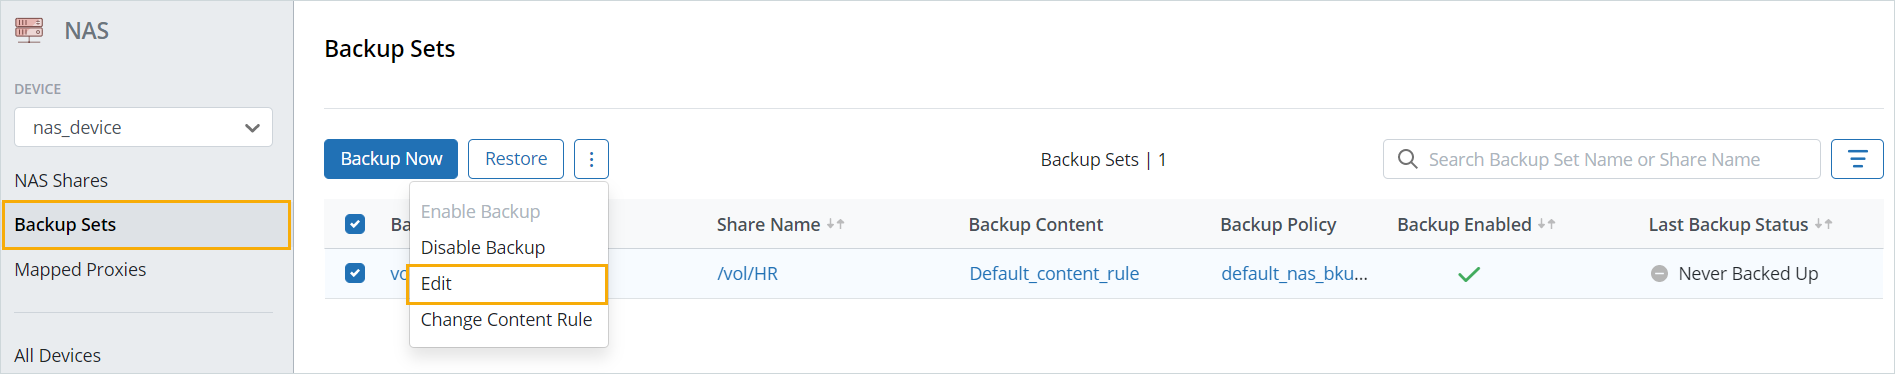 Edit a backup set - Backup Sets page.png